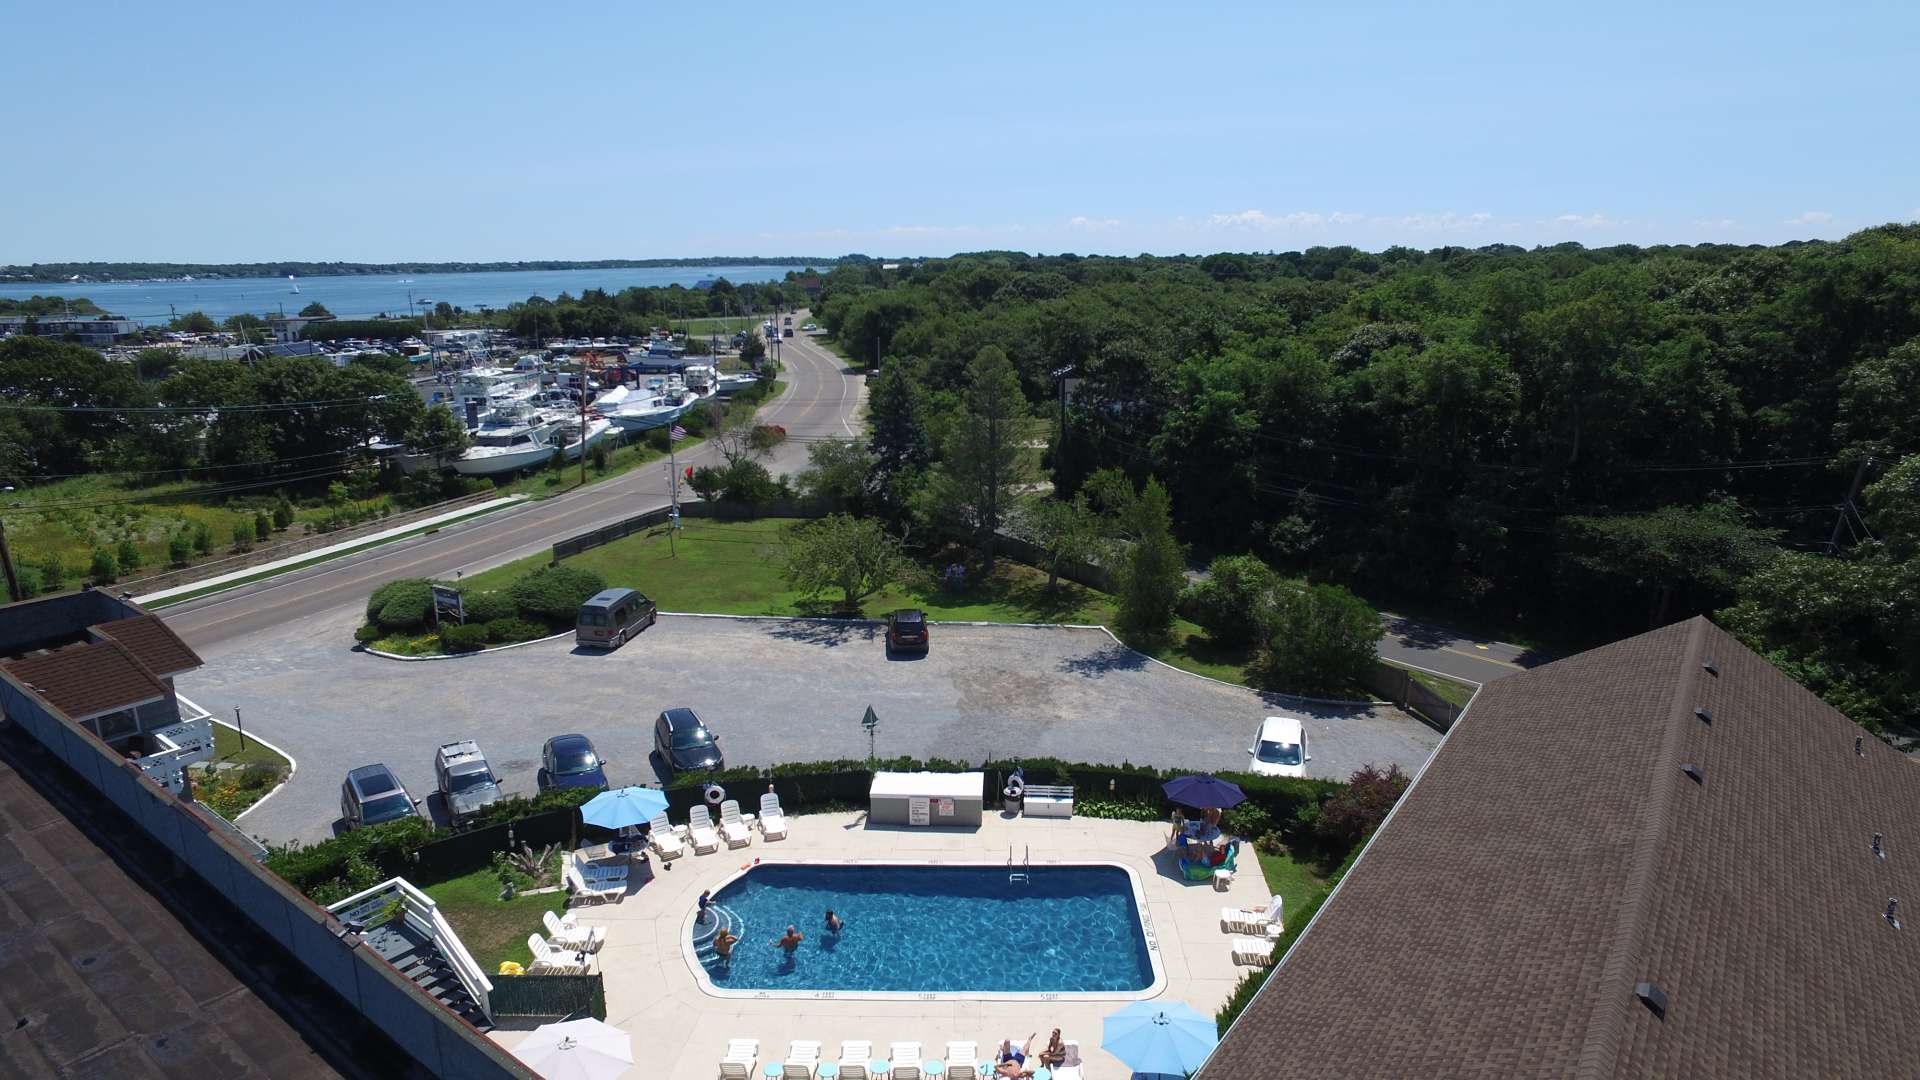 Aerial view of Harborside Resort Motel Pool